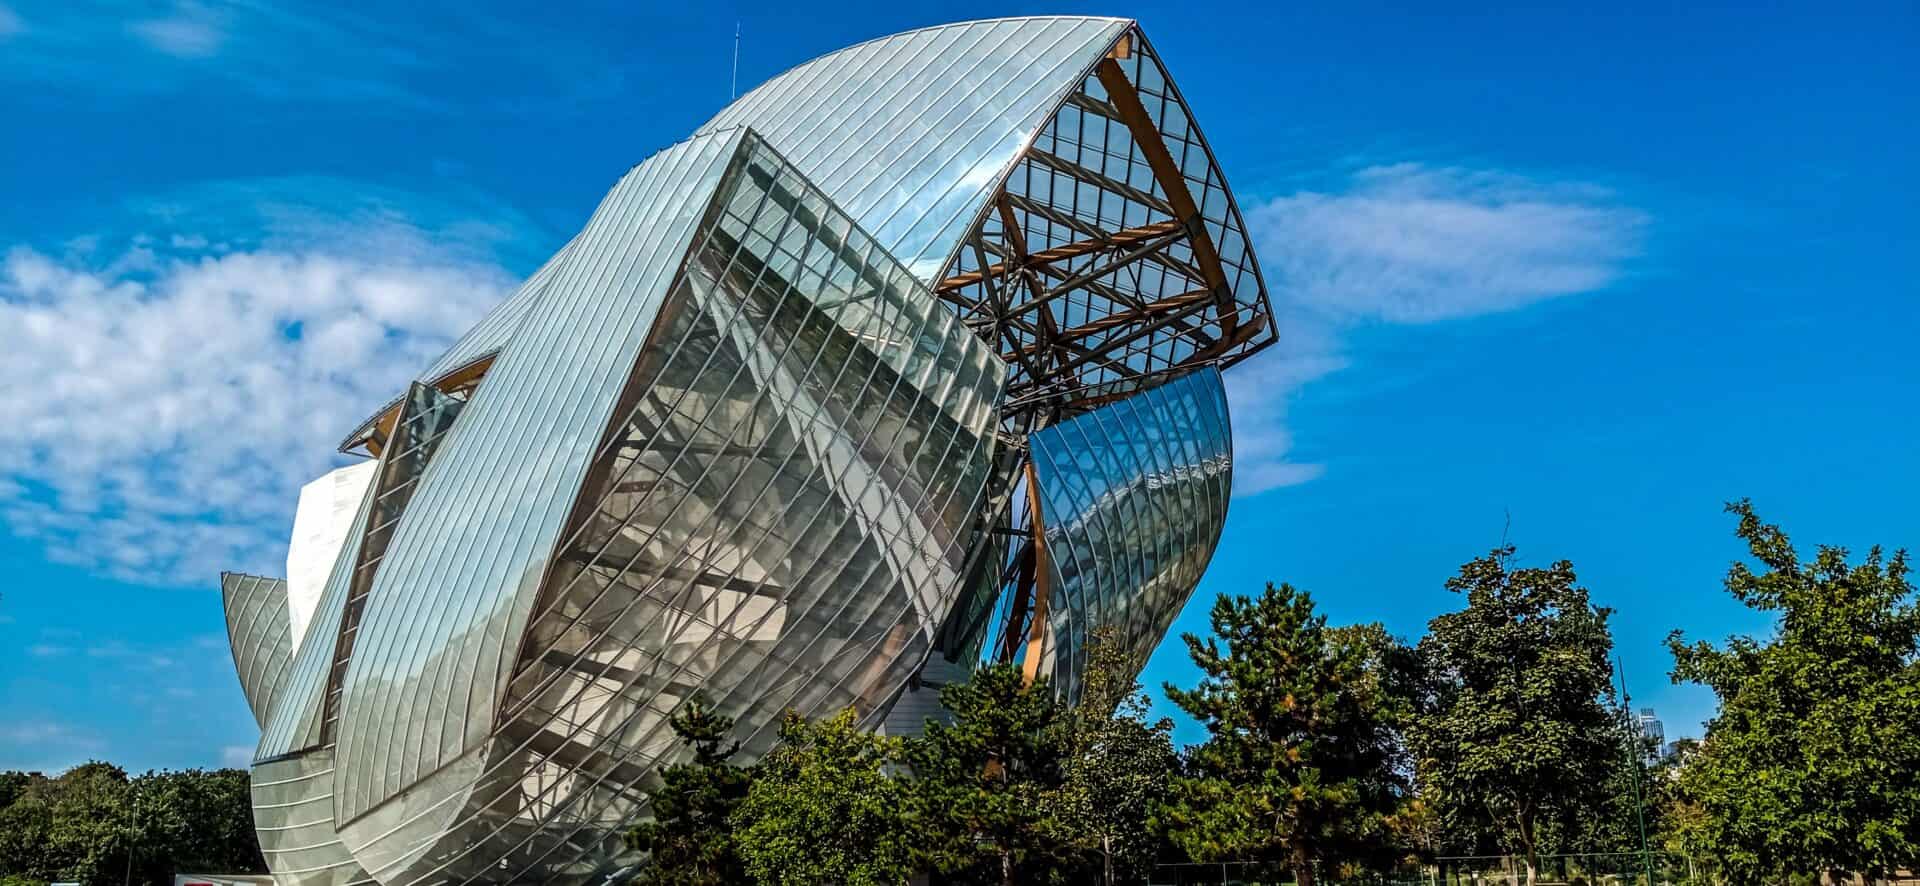 Foundation Louis Vuitton geometric glass building